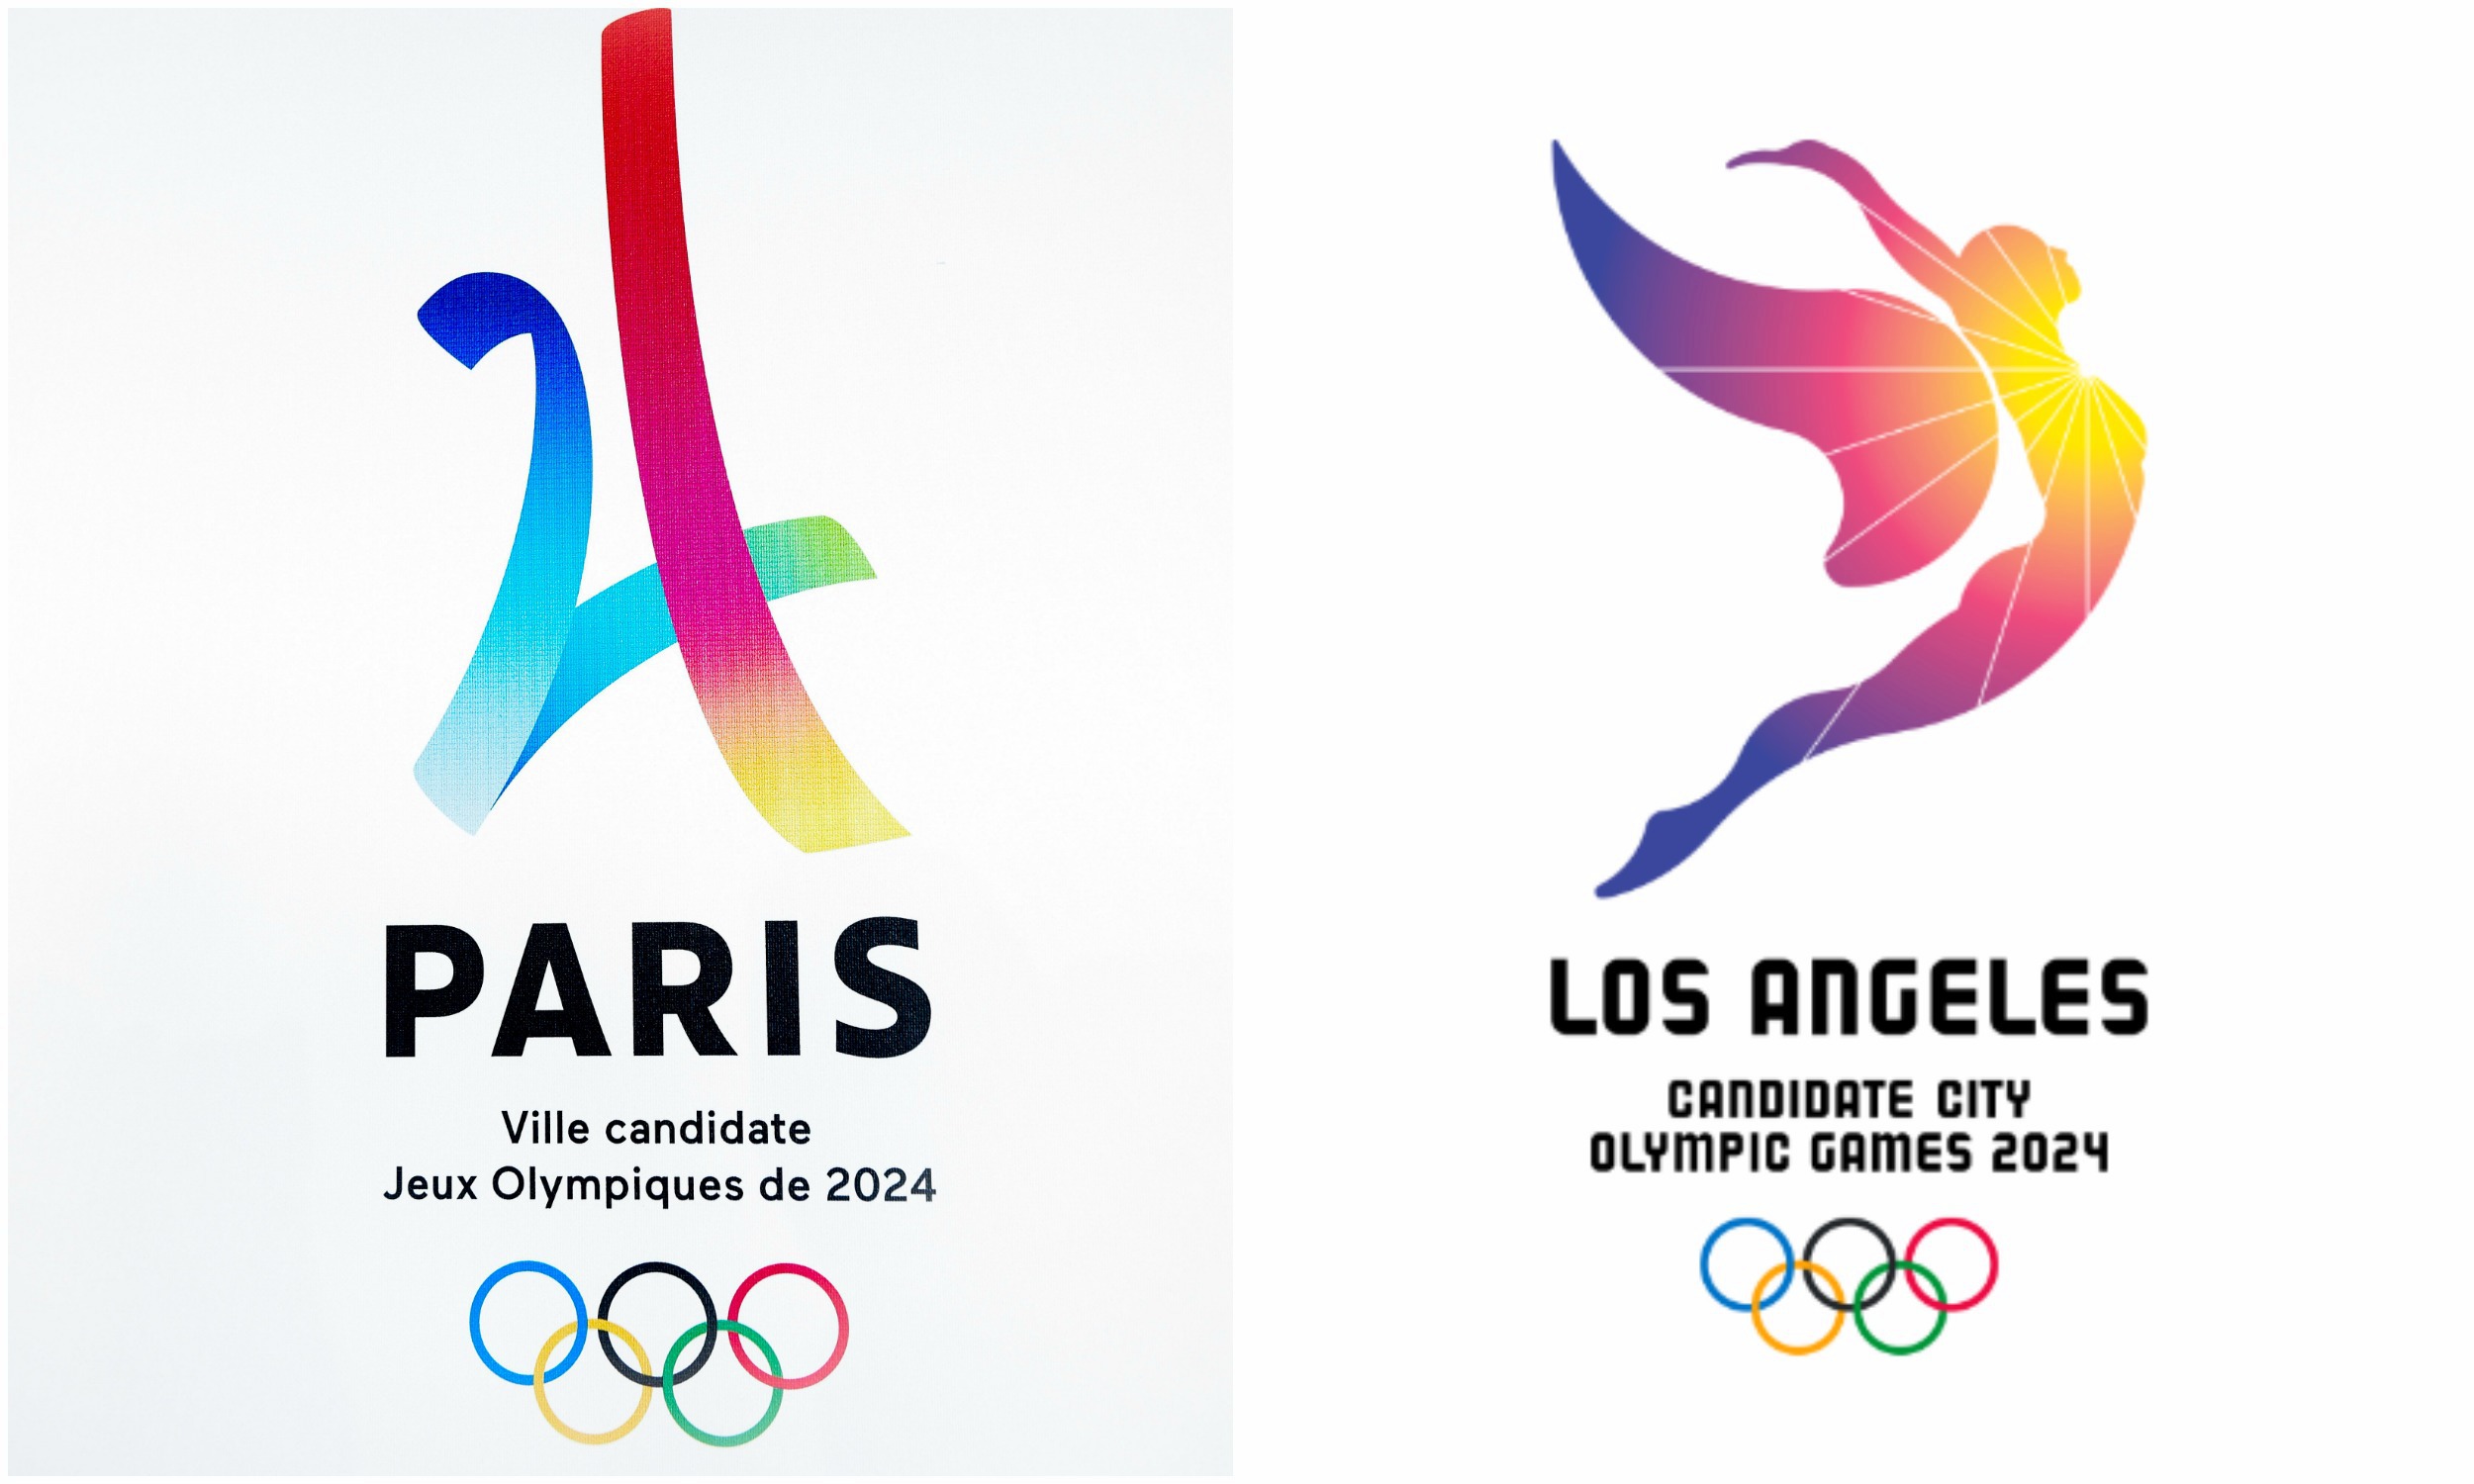 کمیته بین المللی المپیک - المپیک 2024 - المپیک 2028 - فرانسه - کمیته بین المللی المپیک - پاریس - لس آنجلس - Paris - Los Angeles